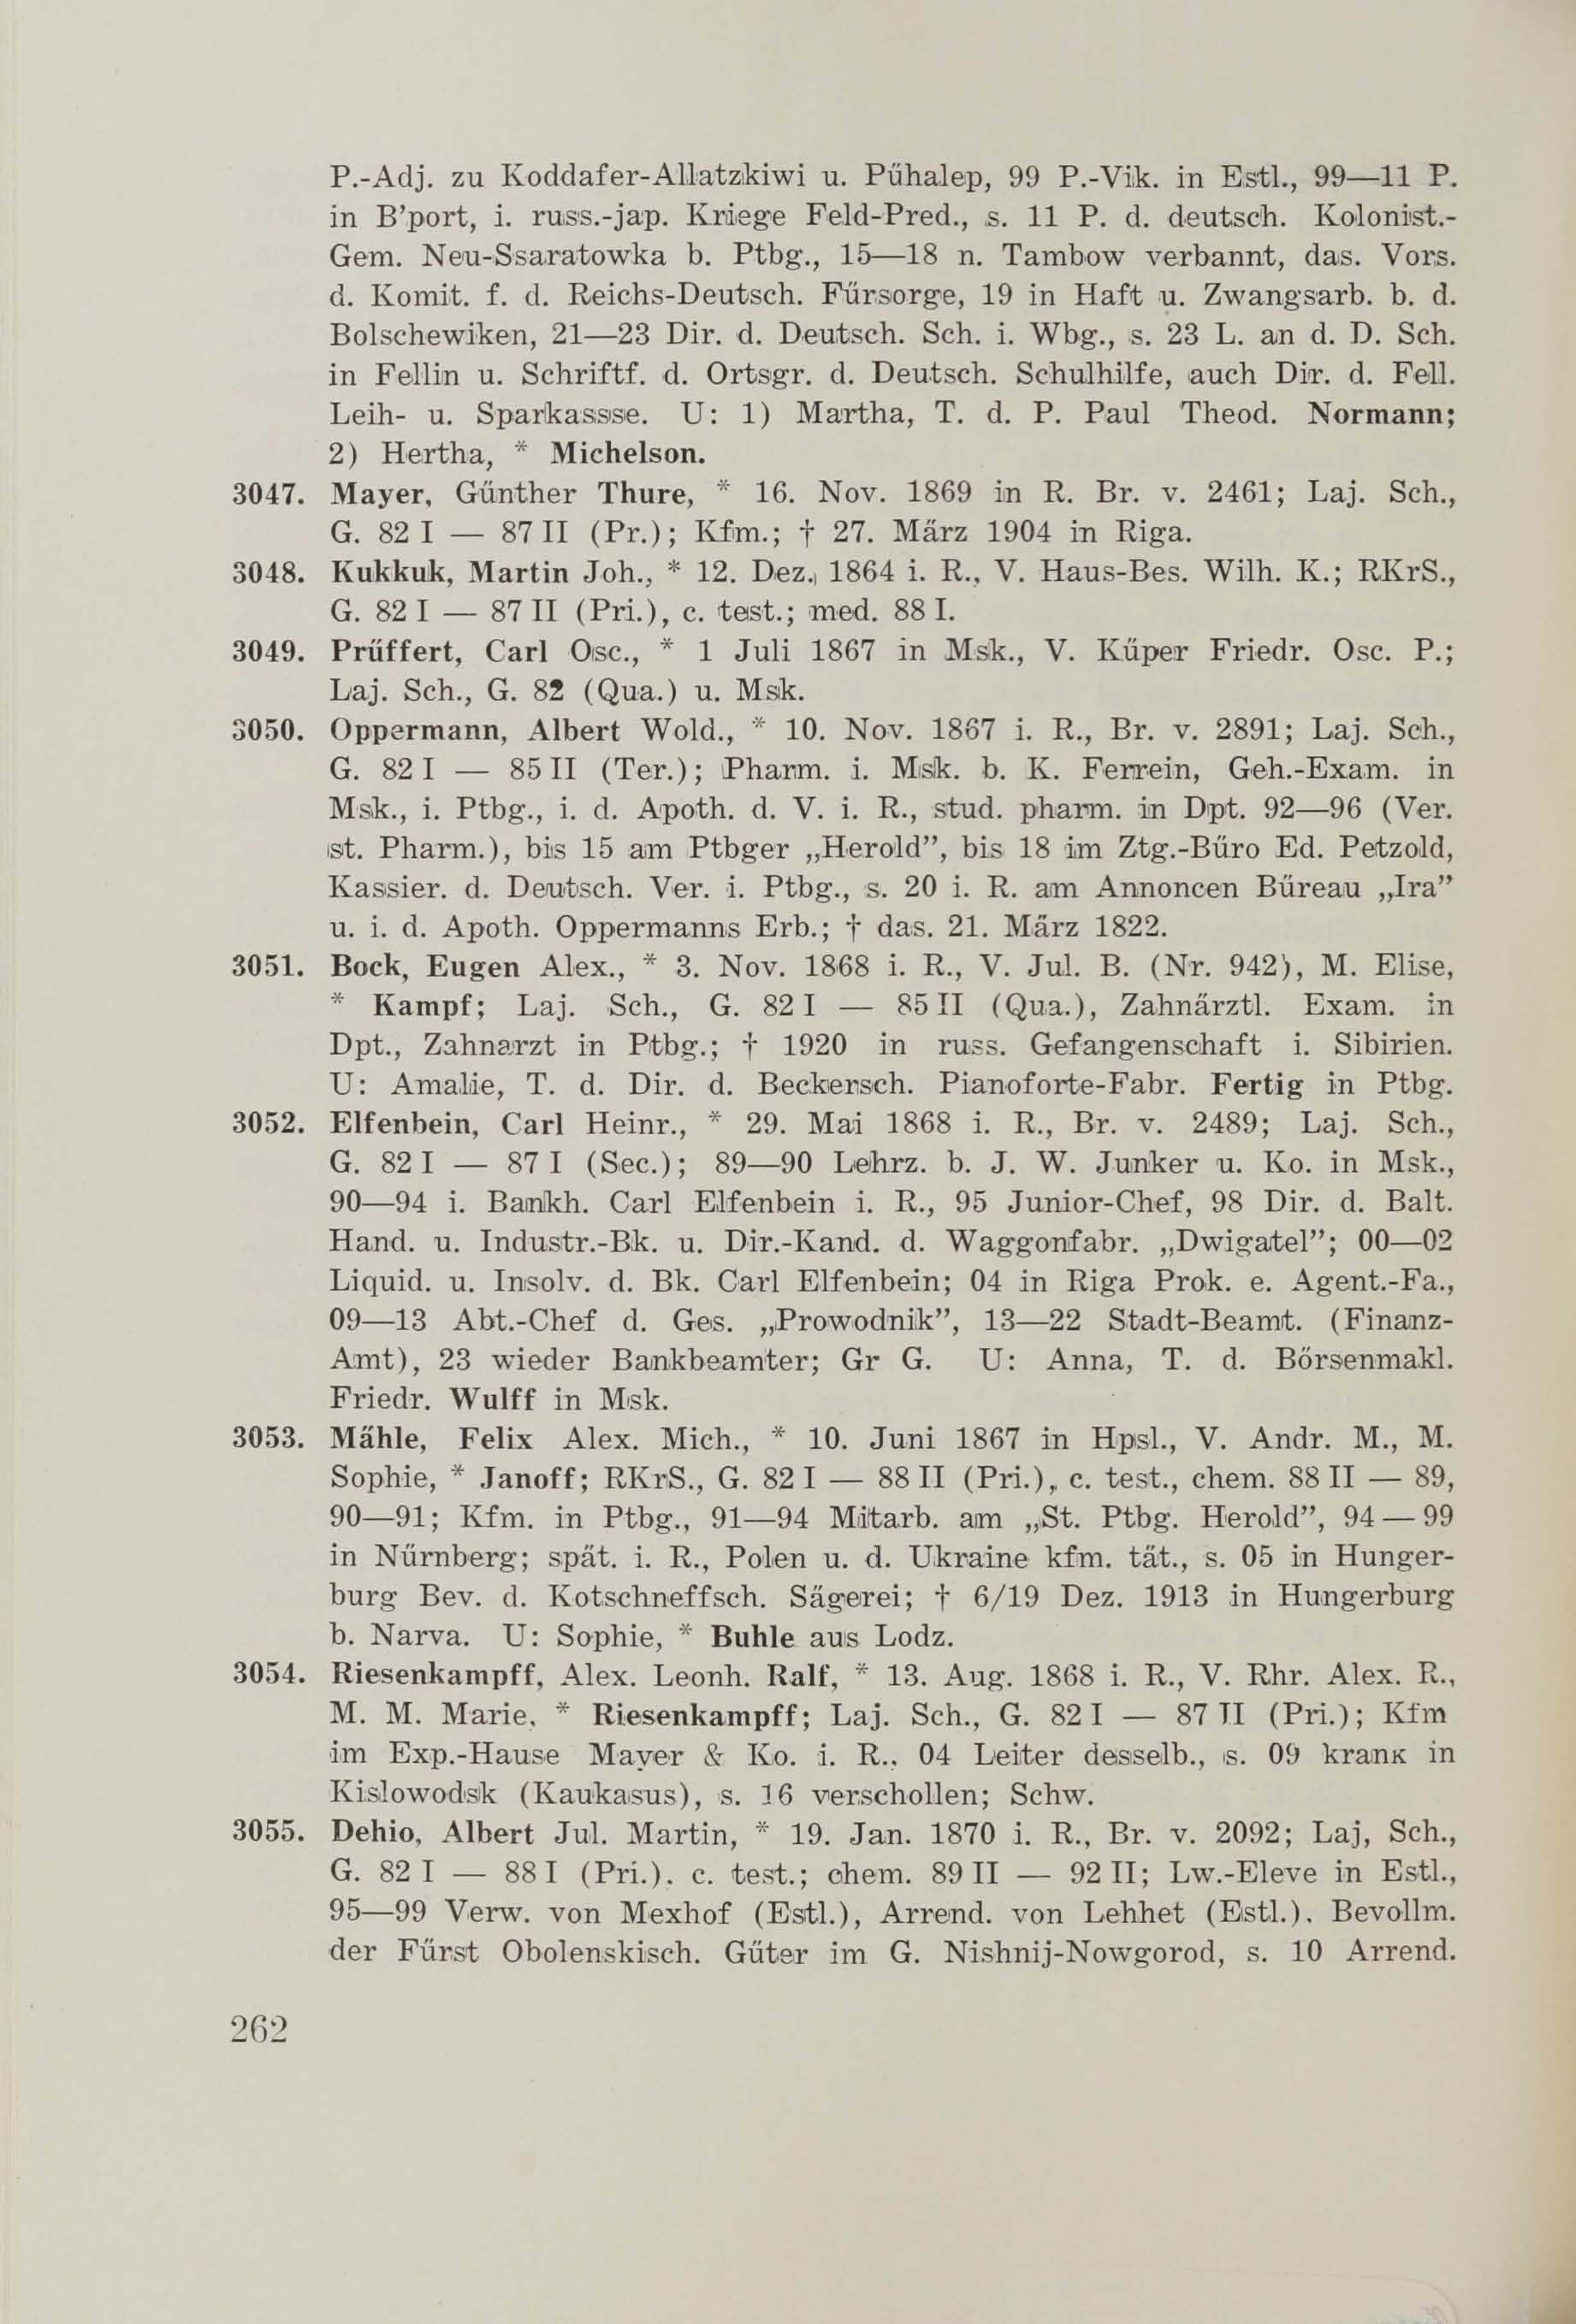 Schüler-Verzeichnis des Revalschen Gouvernements-Gymnasiums 1805–1890 (1931) | 272. (262) Main body of text